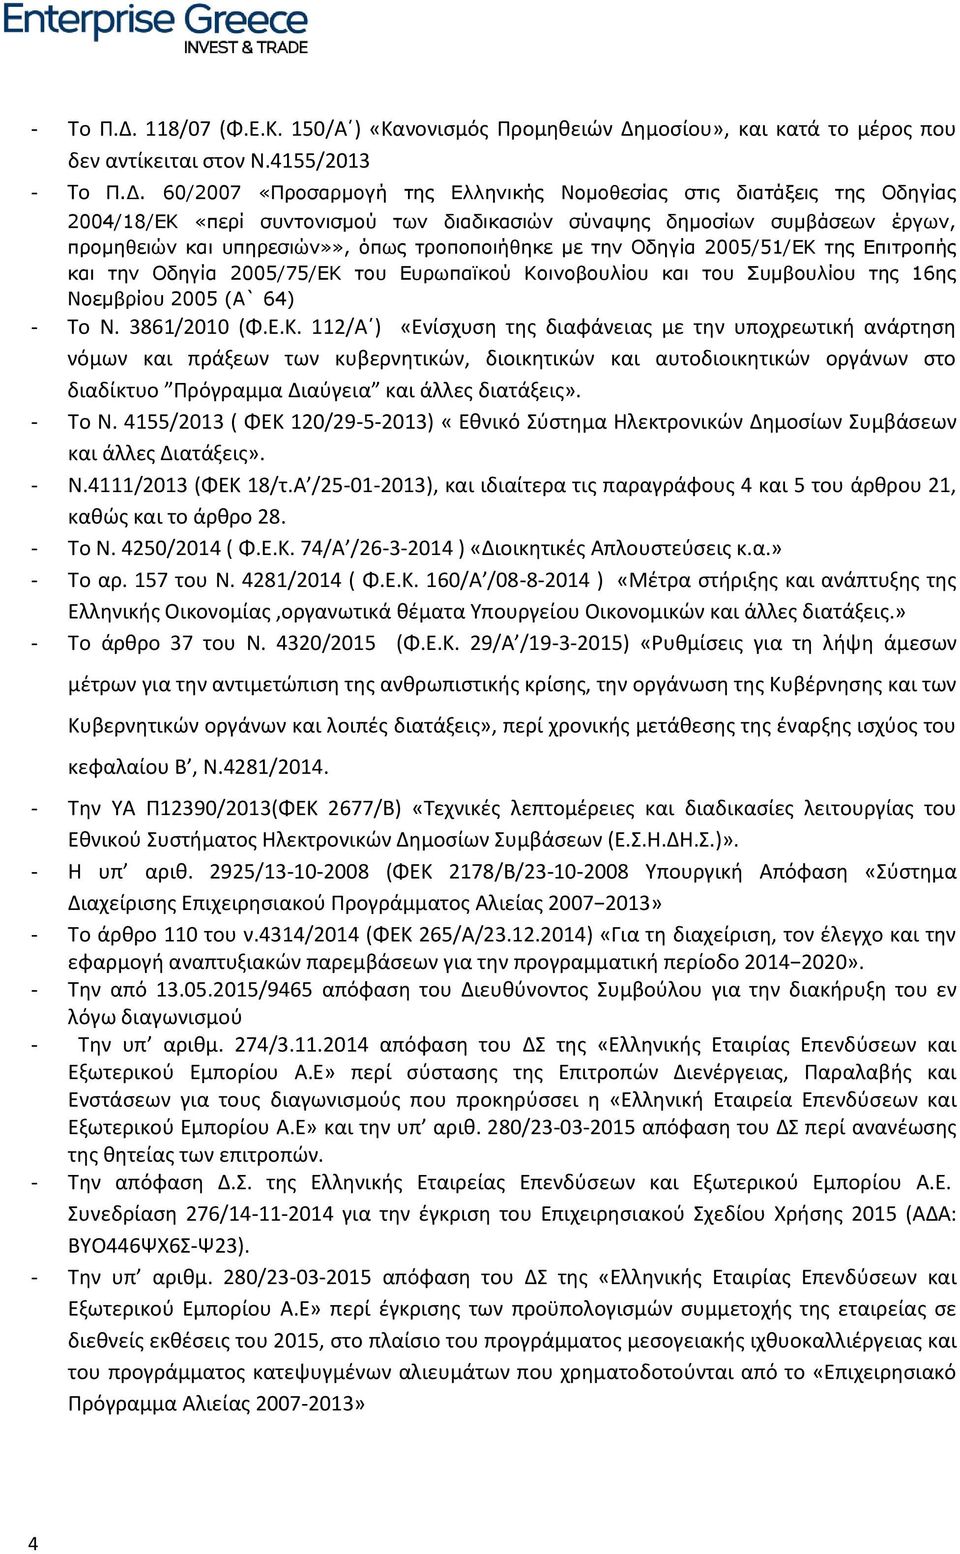 4155/2013  60/2007 «Προσαρμογή της Ελληνικής Νομοθεσίας στις διατάξεις της Οδηγίας 2004/18/ΕΚ «περί συντονισμού των διαδικασιών σύναψης δημοσίων συμβάσεων έργων, προμηθειών και υπηρεσιών»», όπως